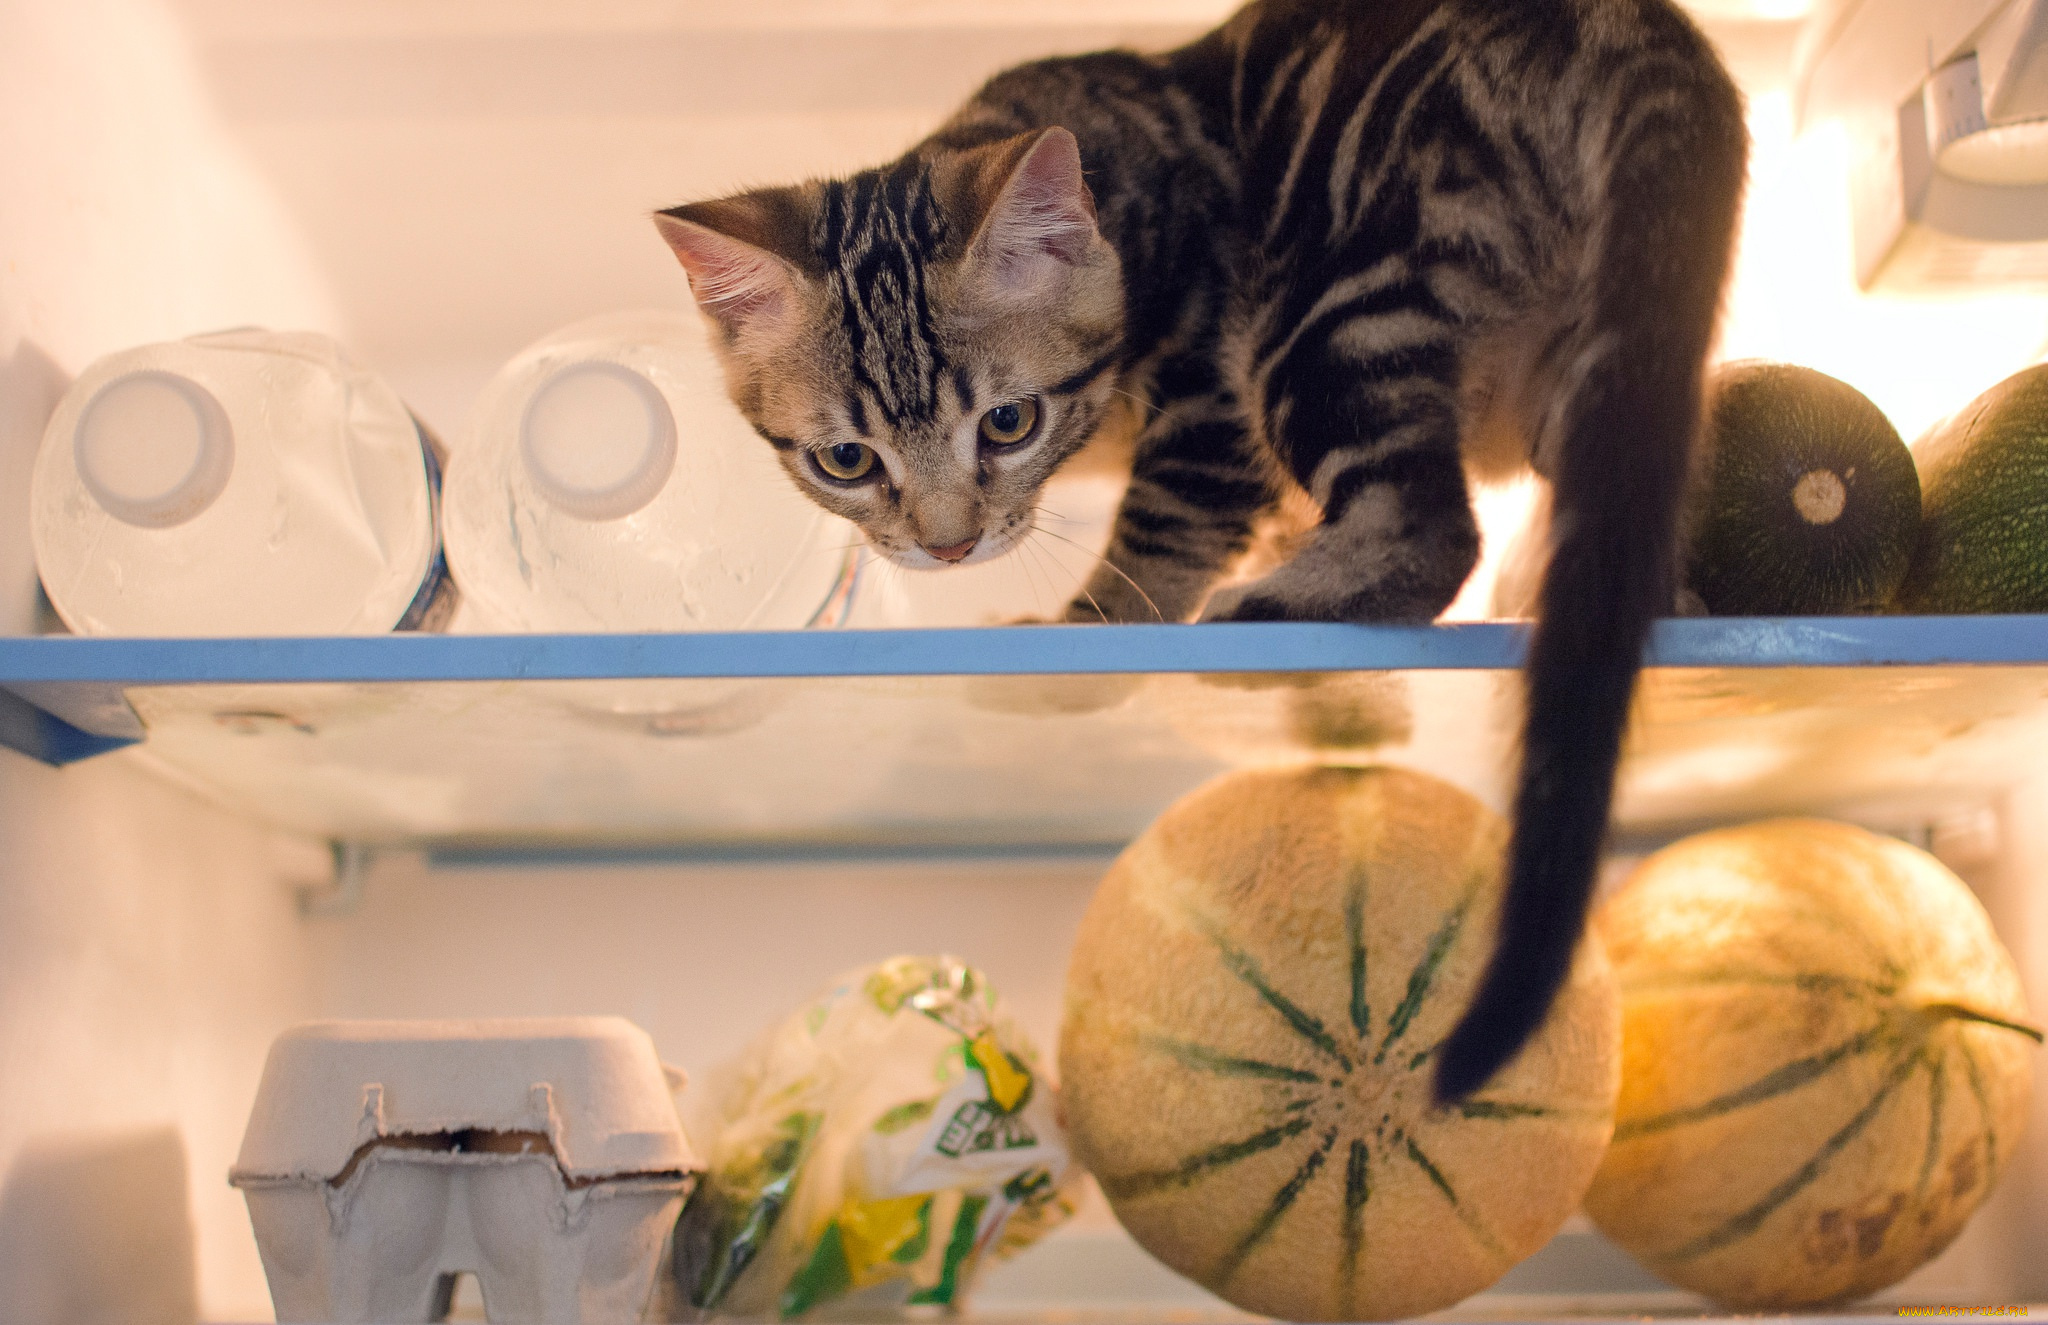 животные, коты, продукты, проказник, котёнок, холодильник, кошка